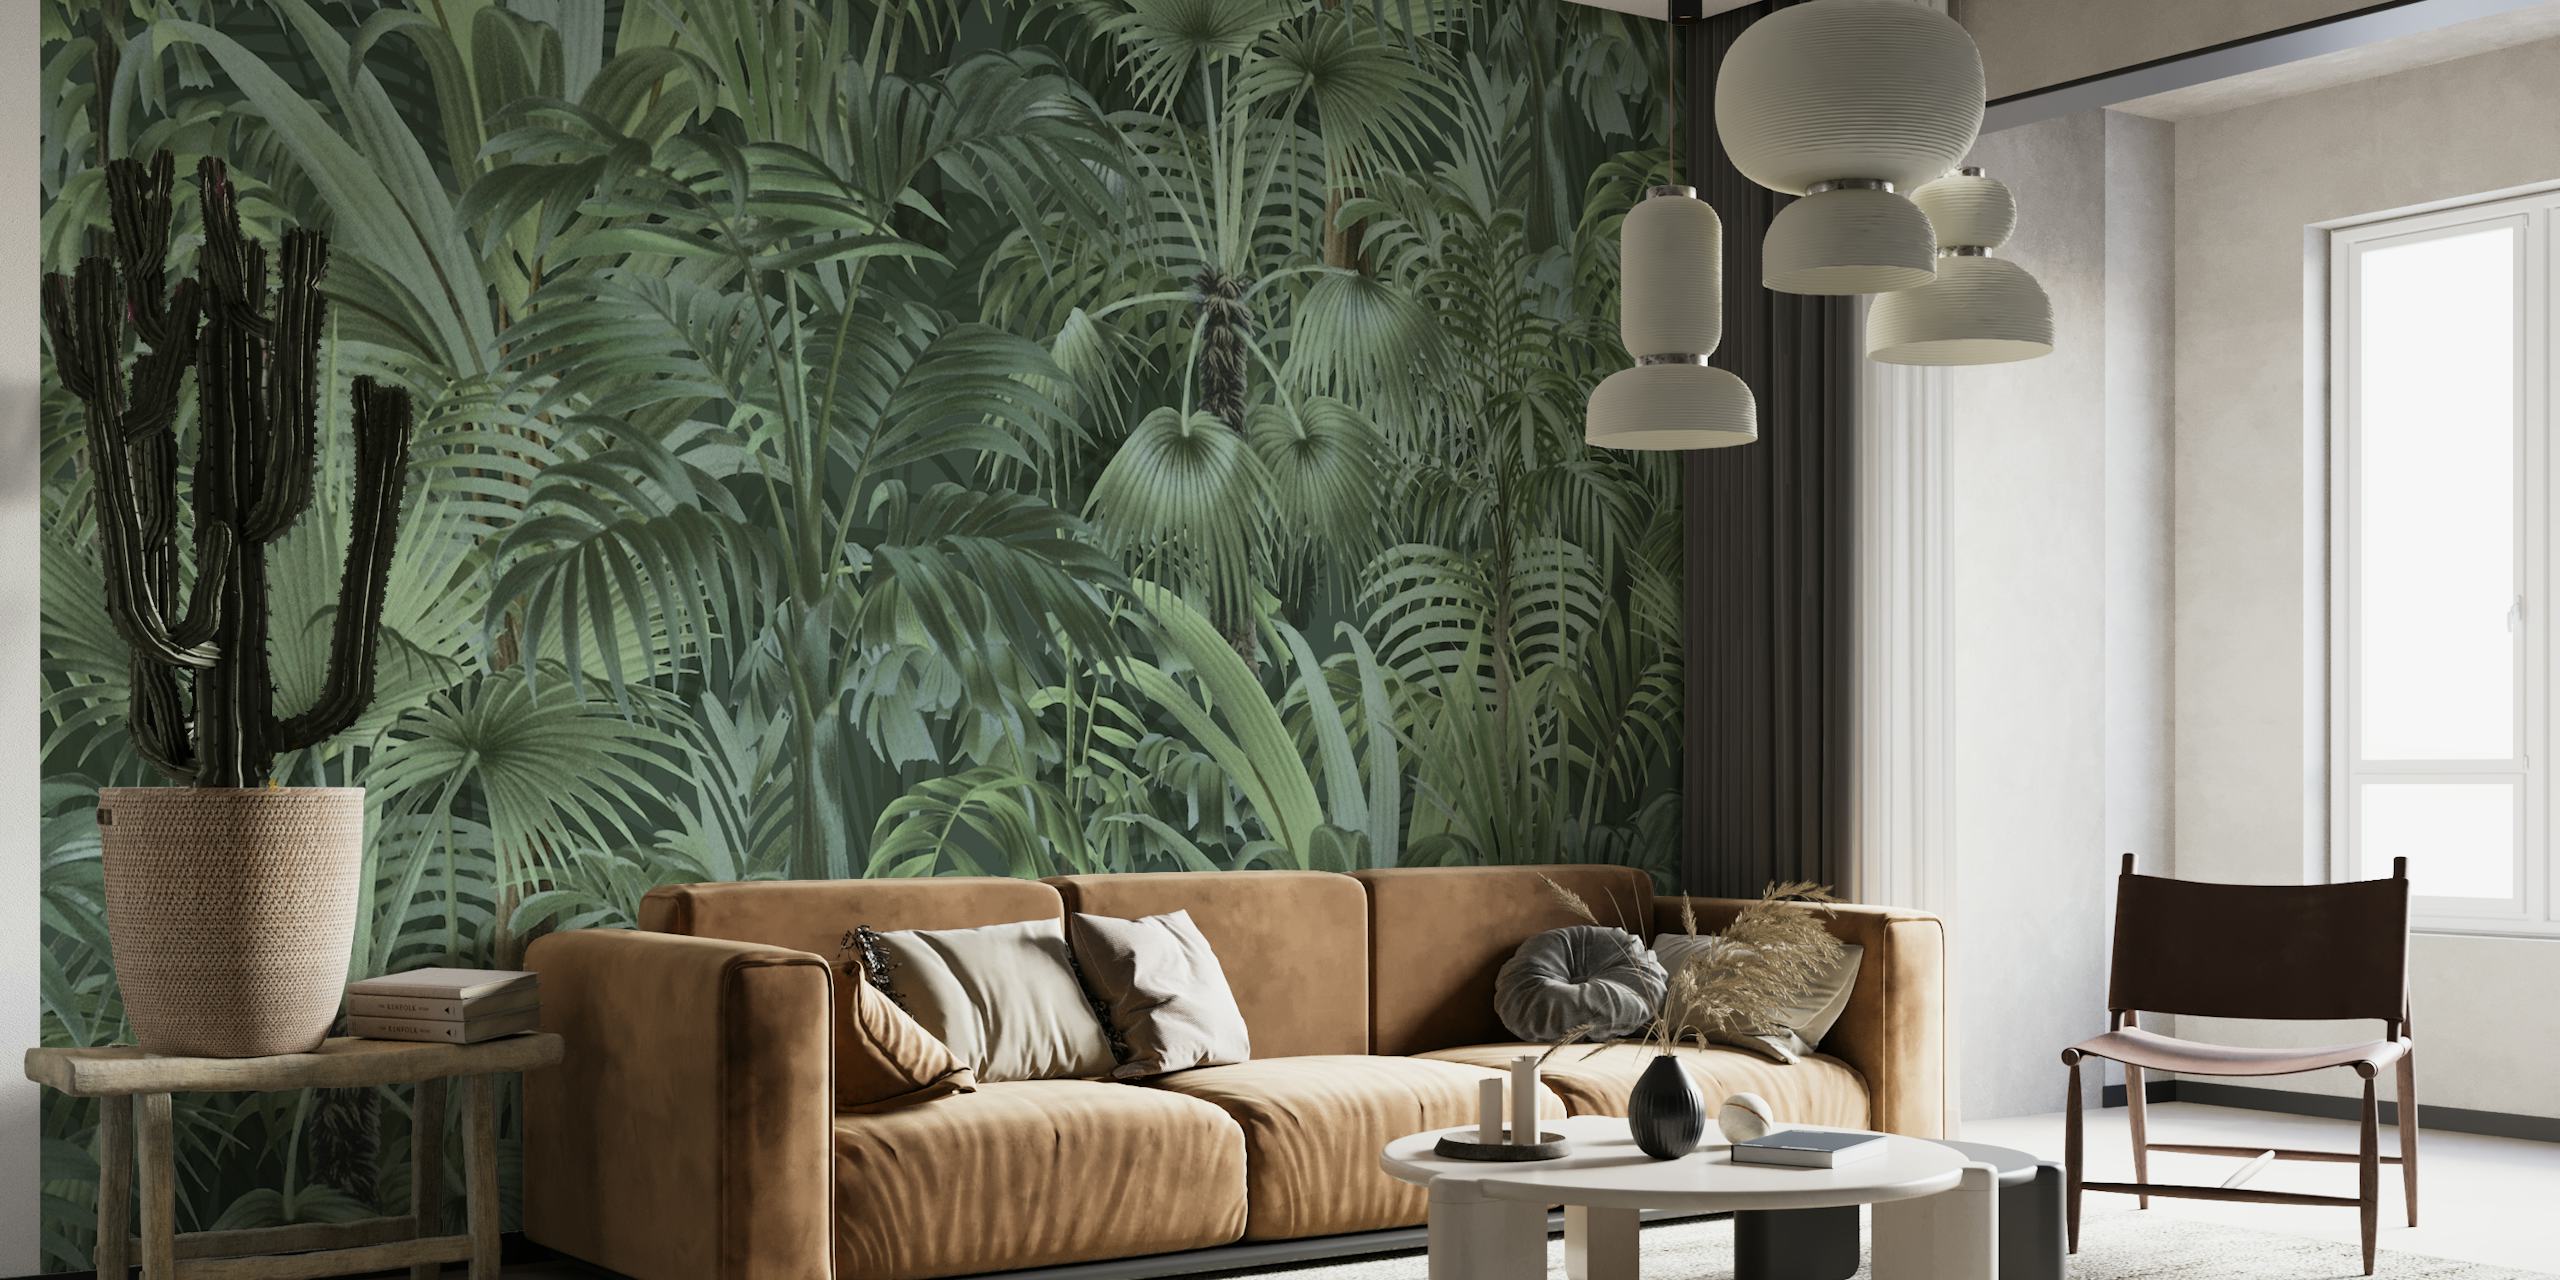 Zidni mural s gustim tropskim lišćem s različitim nijansama zelene, stvara očaravajuću atmosferu džungle.